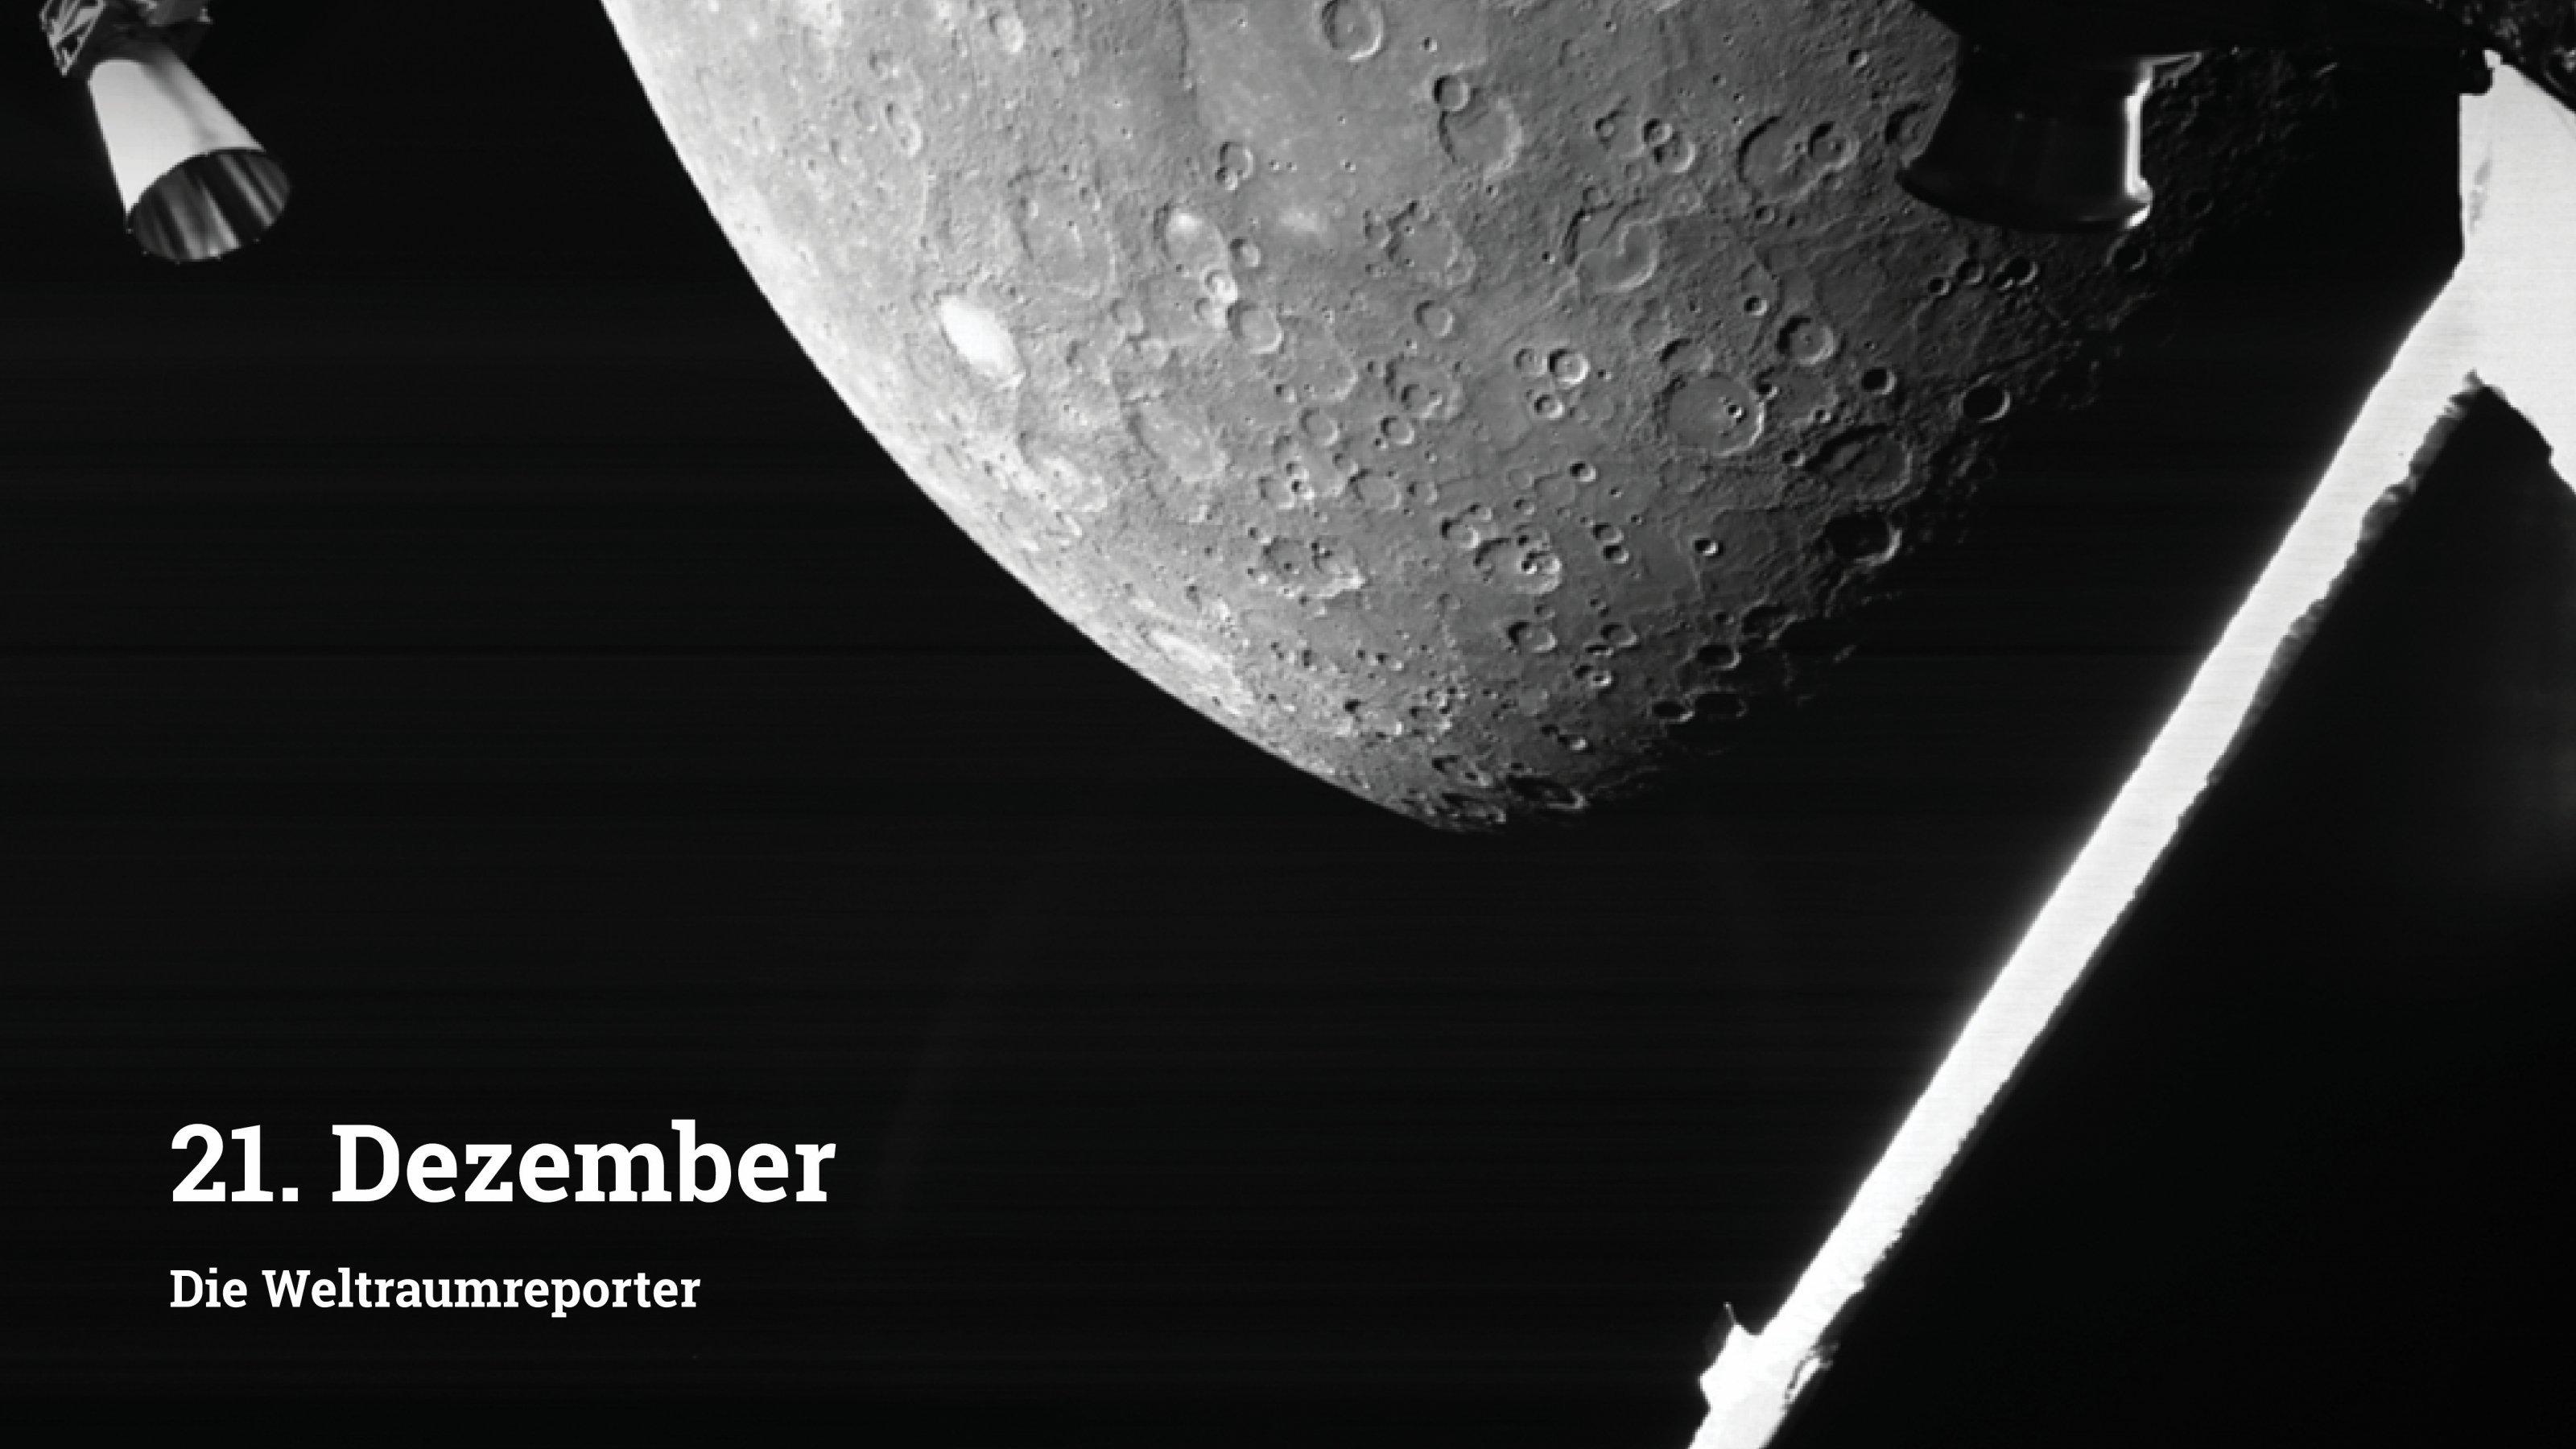 Ein Raumsonden-Selfie: Man sieht einen herausragenden Mast und ein seitliches Triebwerk von BepiColombo, dahinter die kraterzerfurchte Oberfläche Merkurs.